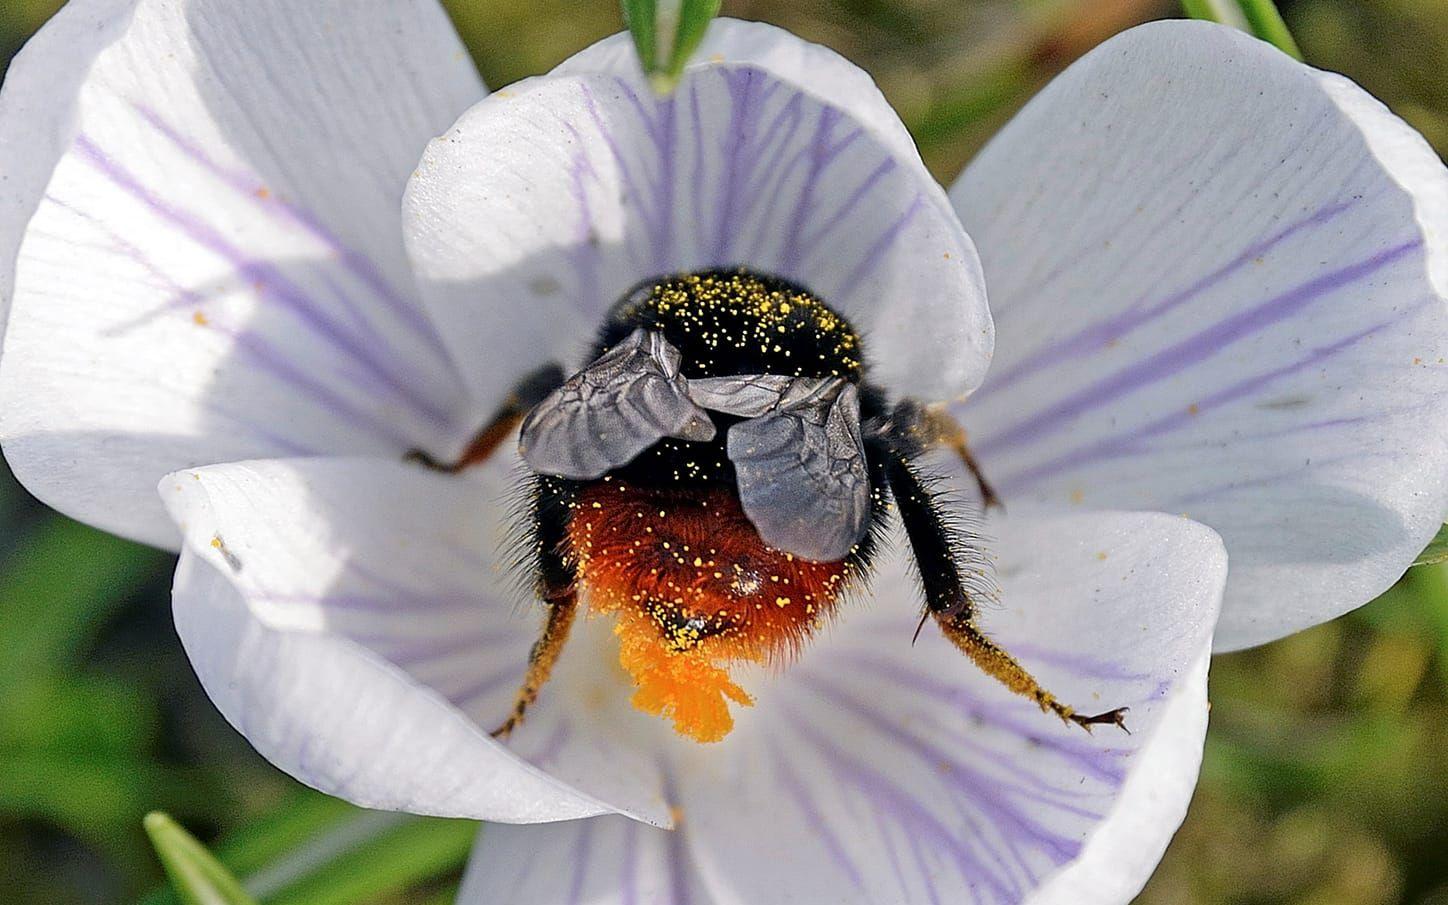 I Sverige finns det ungefär 270 olika arter av bin. Alla utom honungsbiet, som sköts av människan, är vilda bin. Humlor räknas också som ett slags bi och i Sverige finns det cirka 40 arter av humlor. 